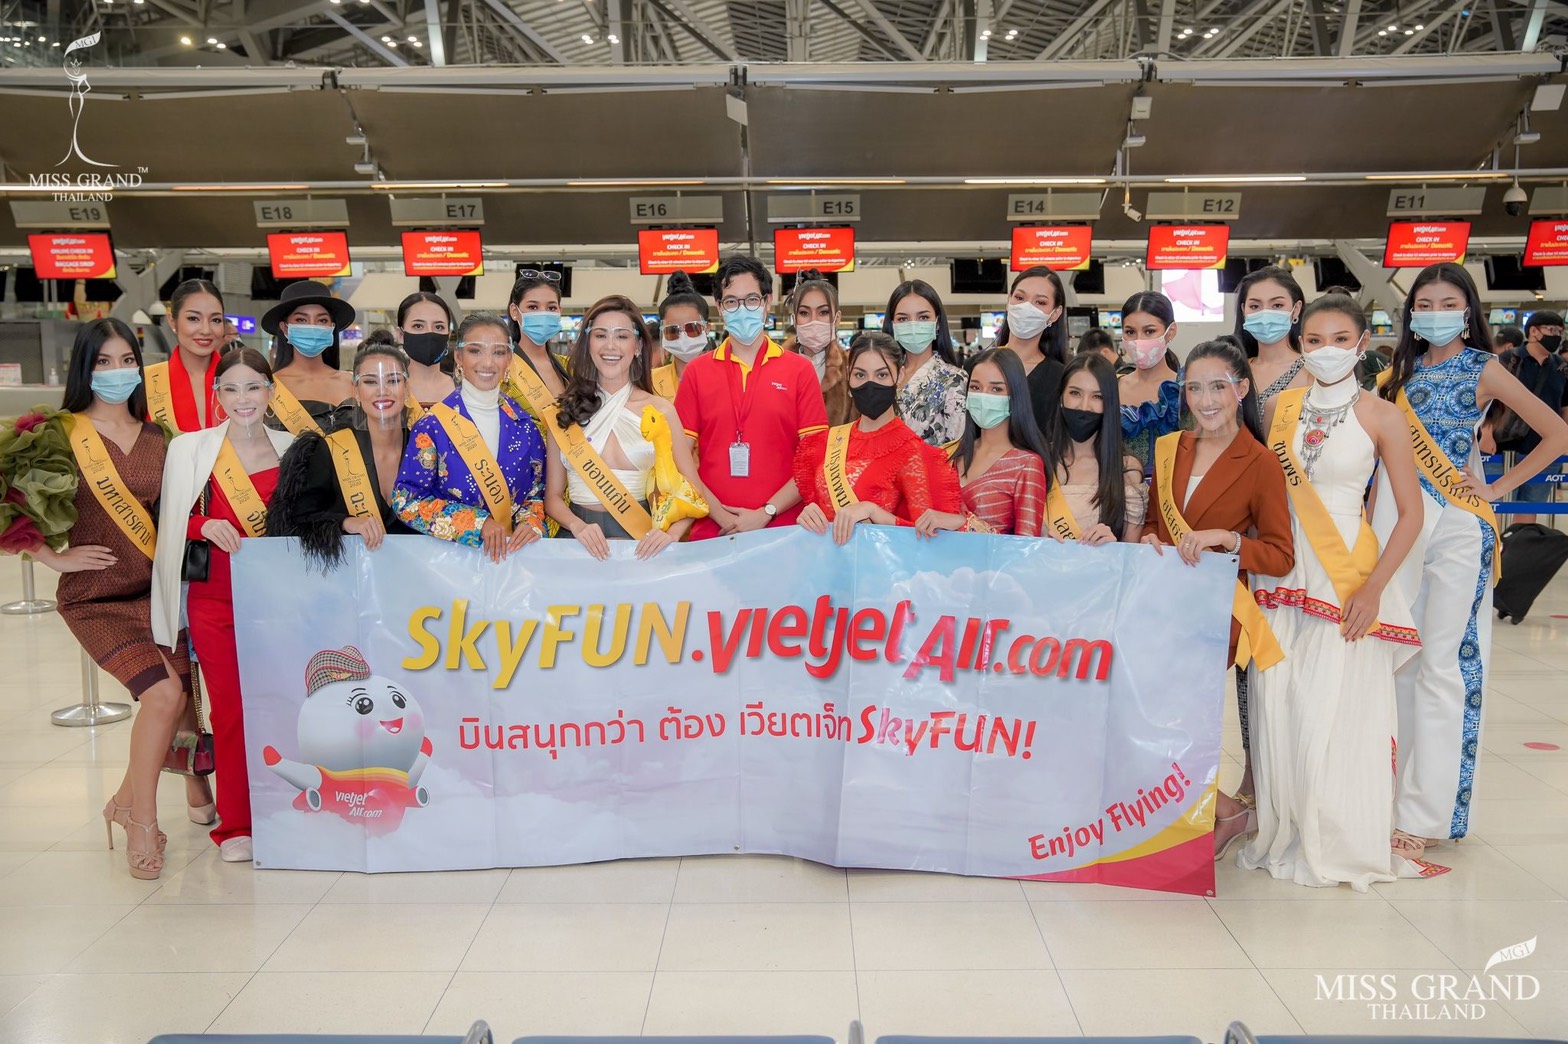 สายการบินไทยเวียตเจ็ทให้การต้อนรับผู้เข้าประกวดมิสแกรนด์ไทยแลนด์ 2020